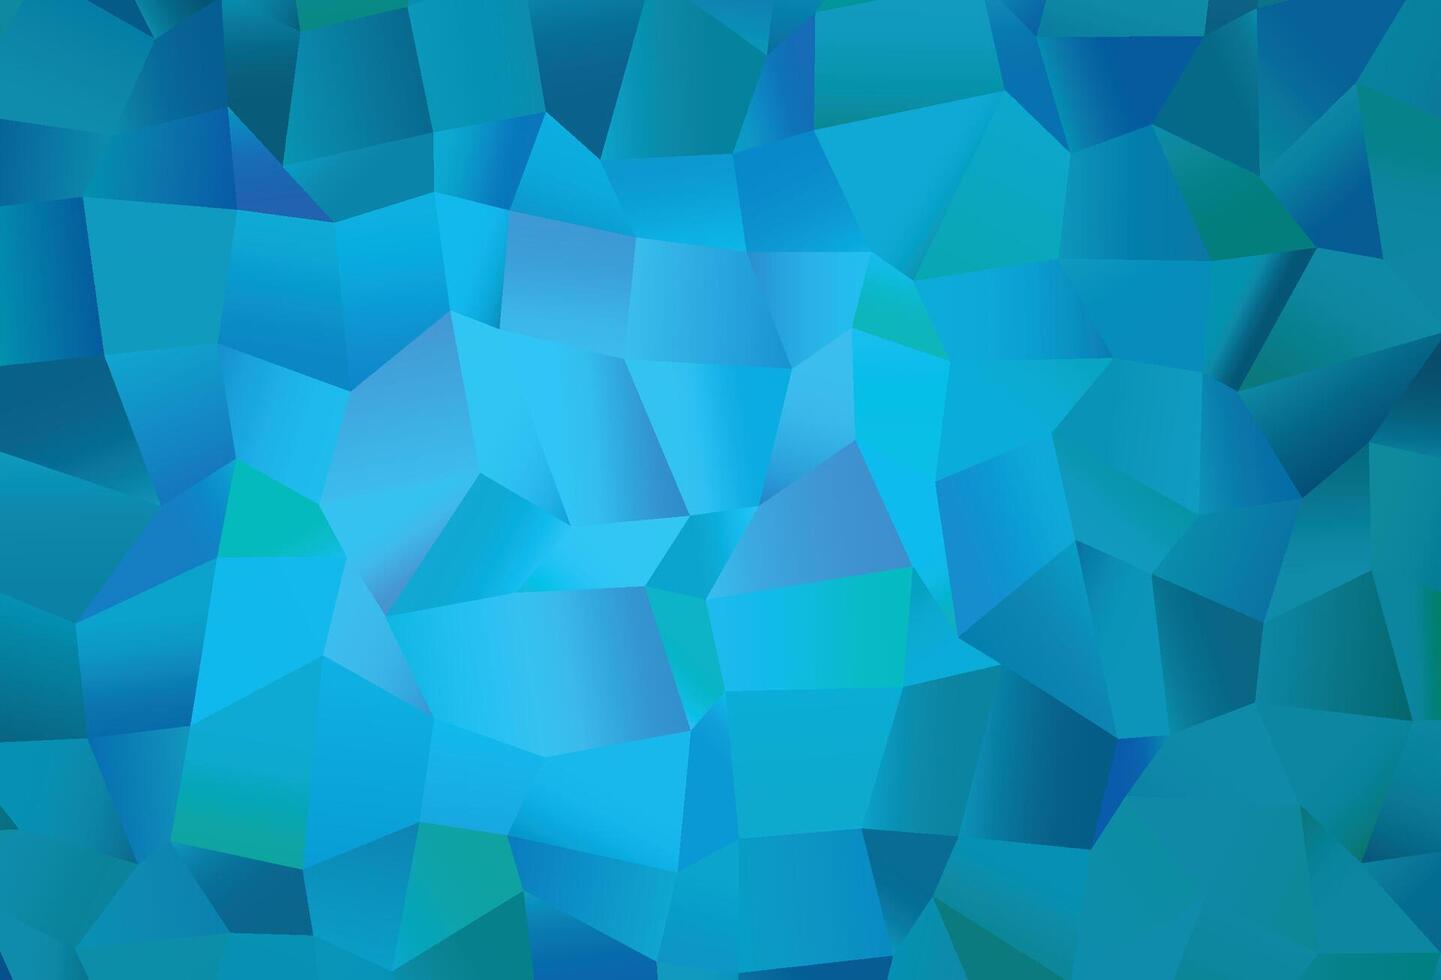 copertina vettoriale azzurra con stile poligonale.